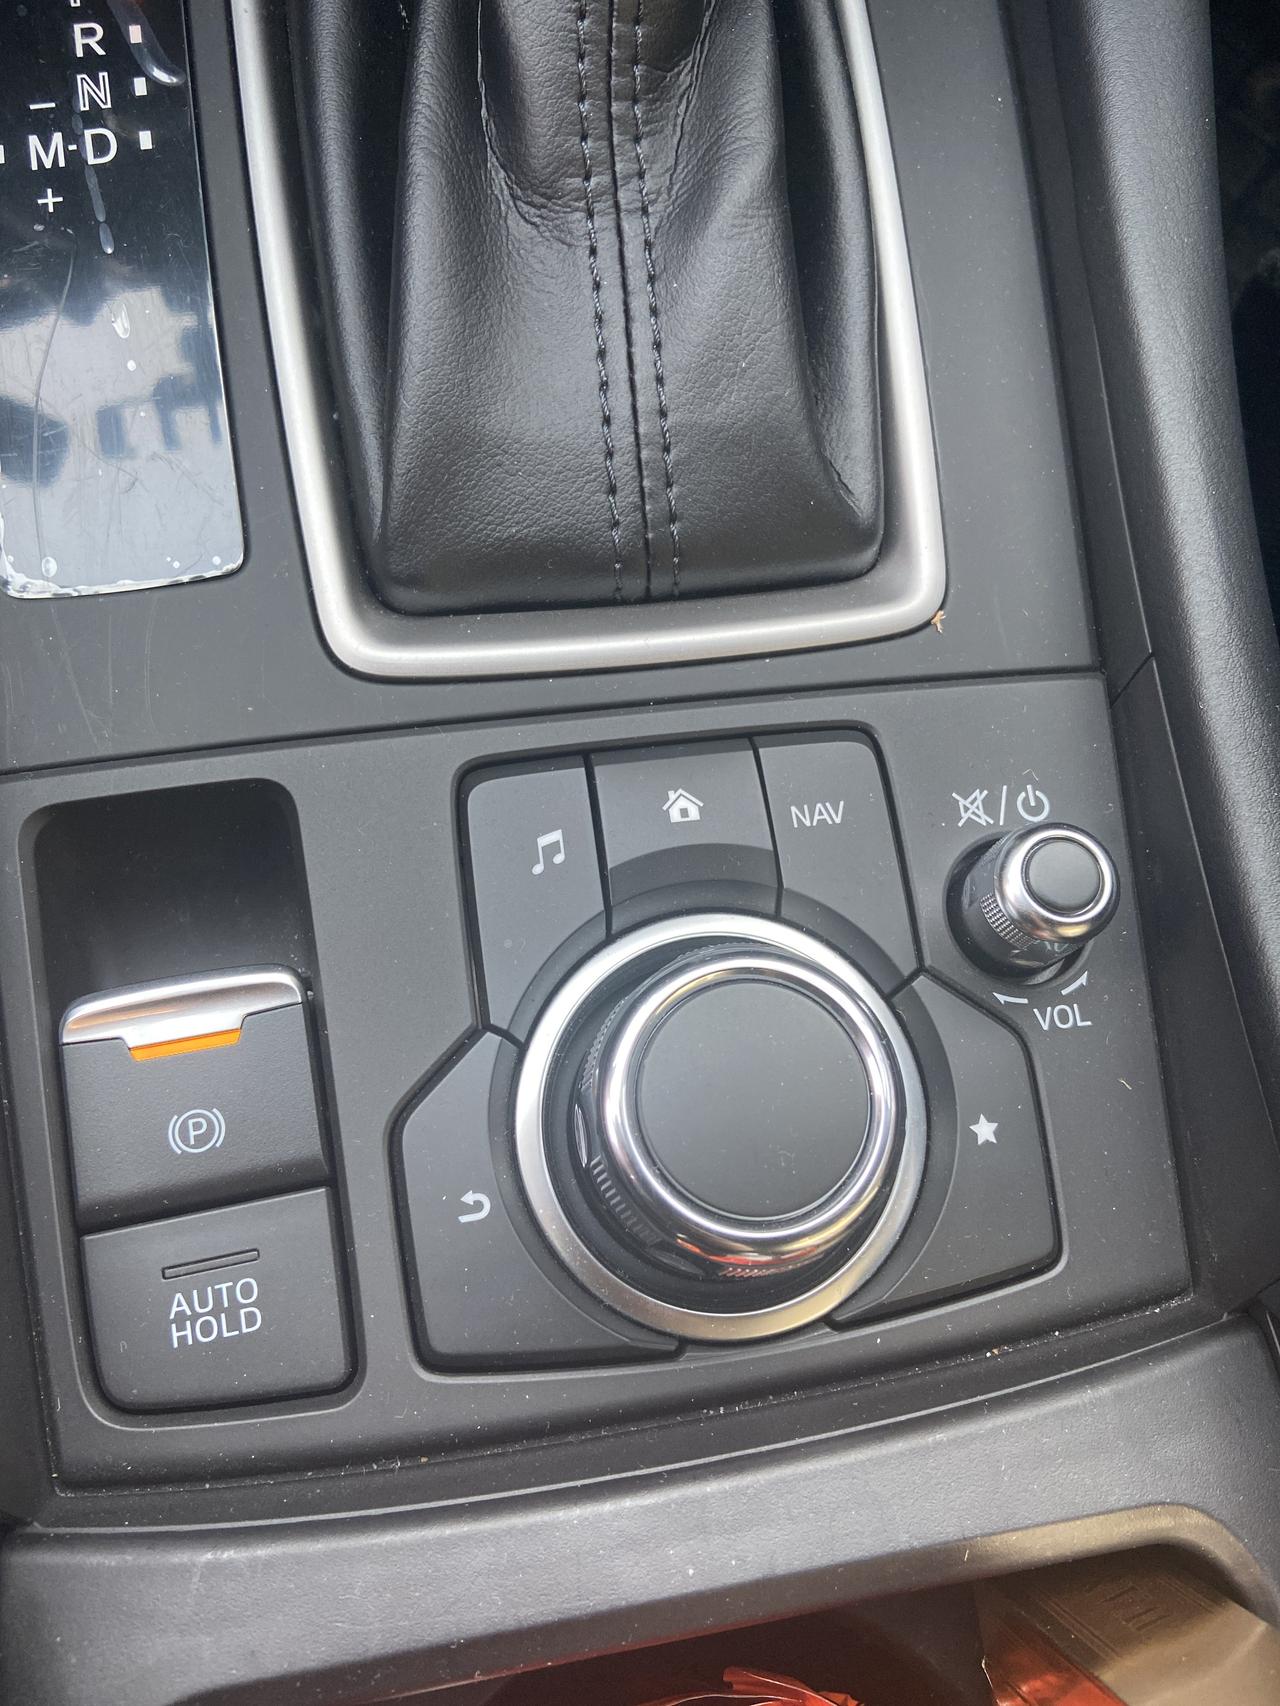 马自达CX-4 请问 中间些都是干嘛用的呀 圆按钮和周围的这些按钮 提车一个月了 这些功能都没用过